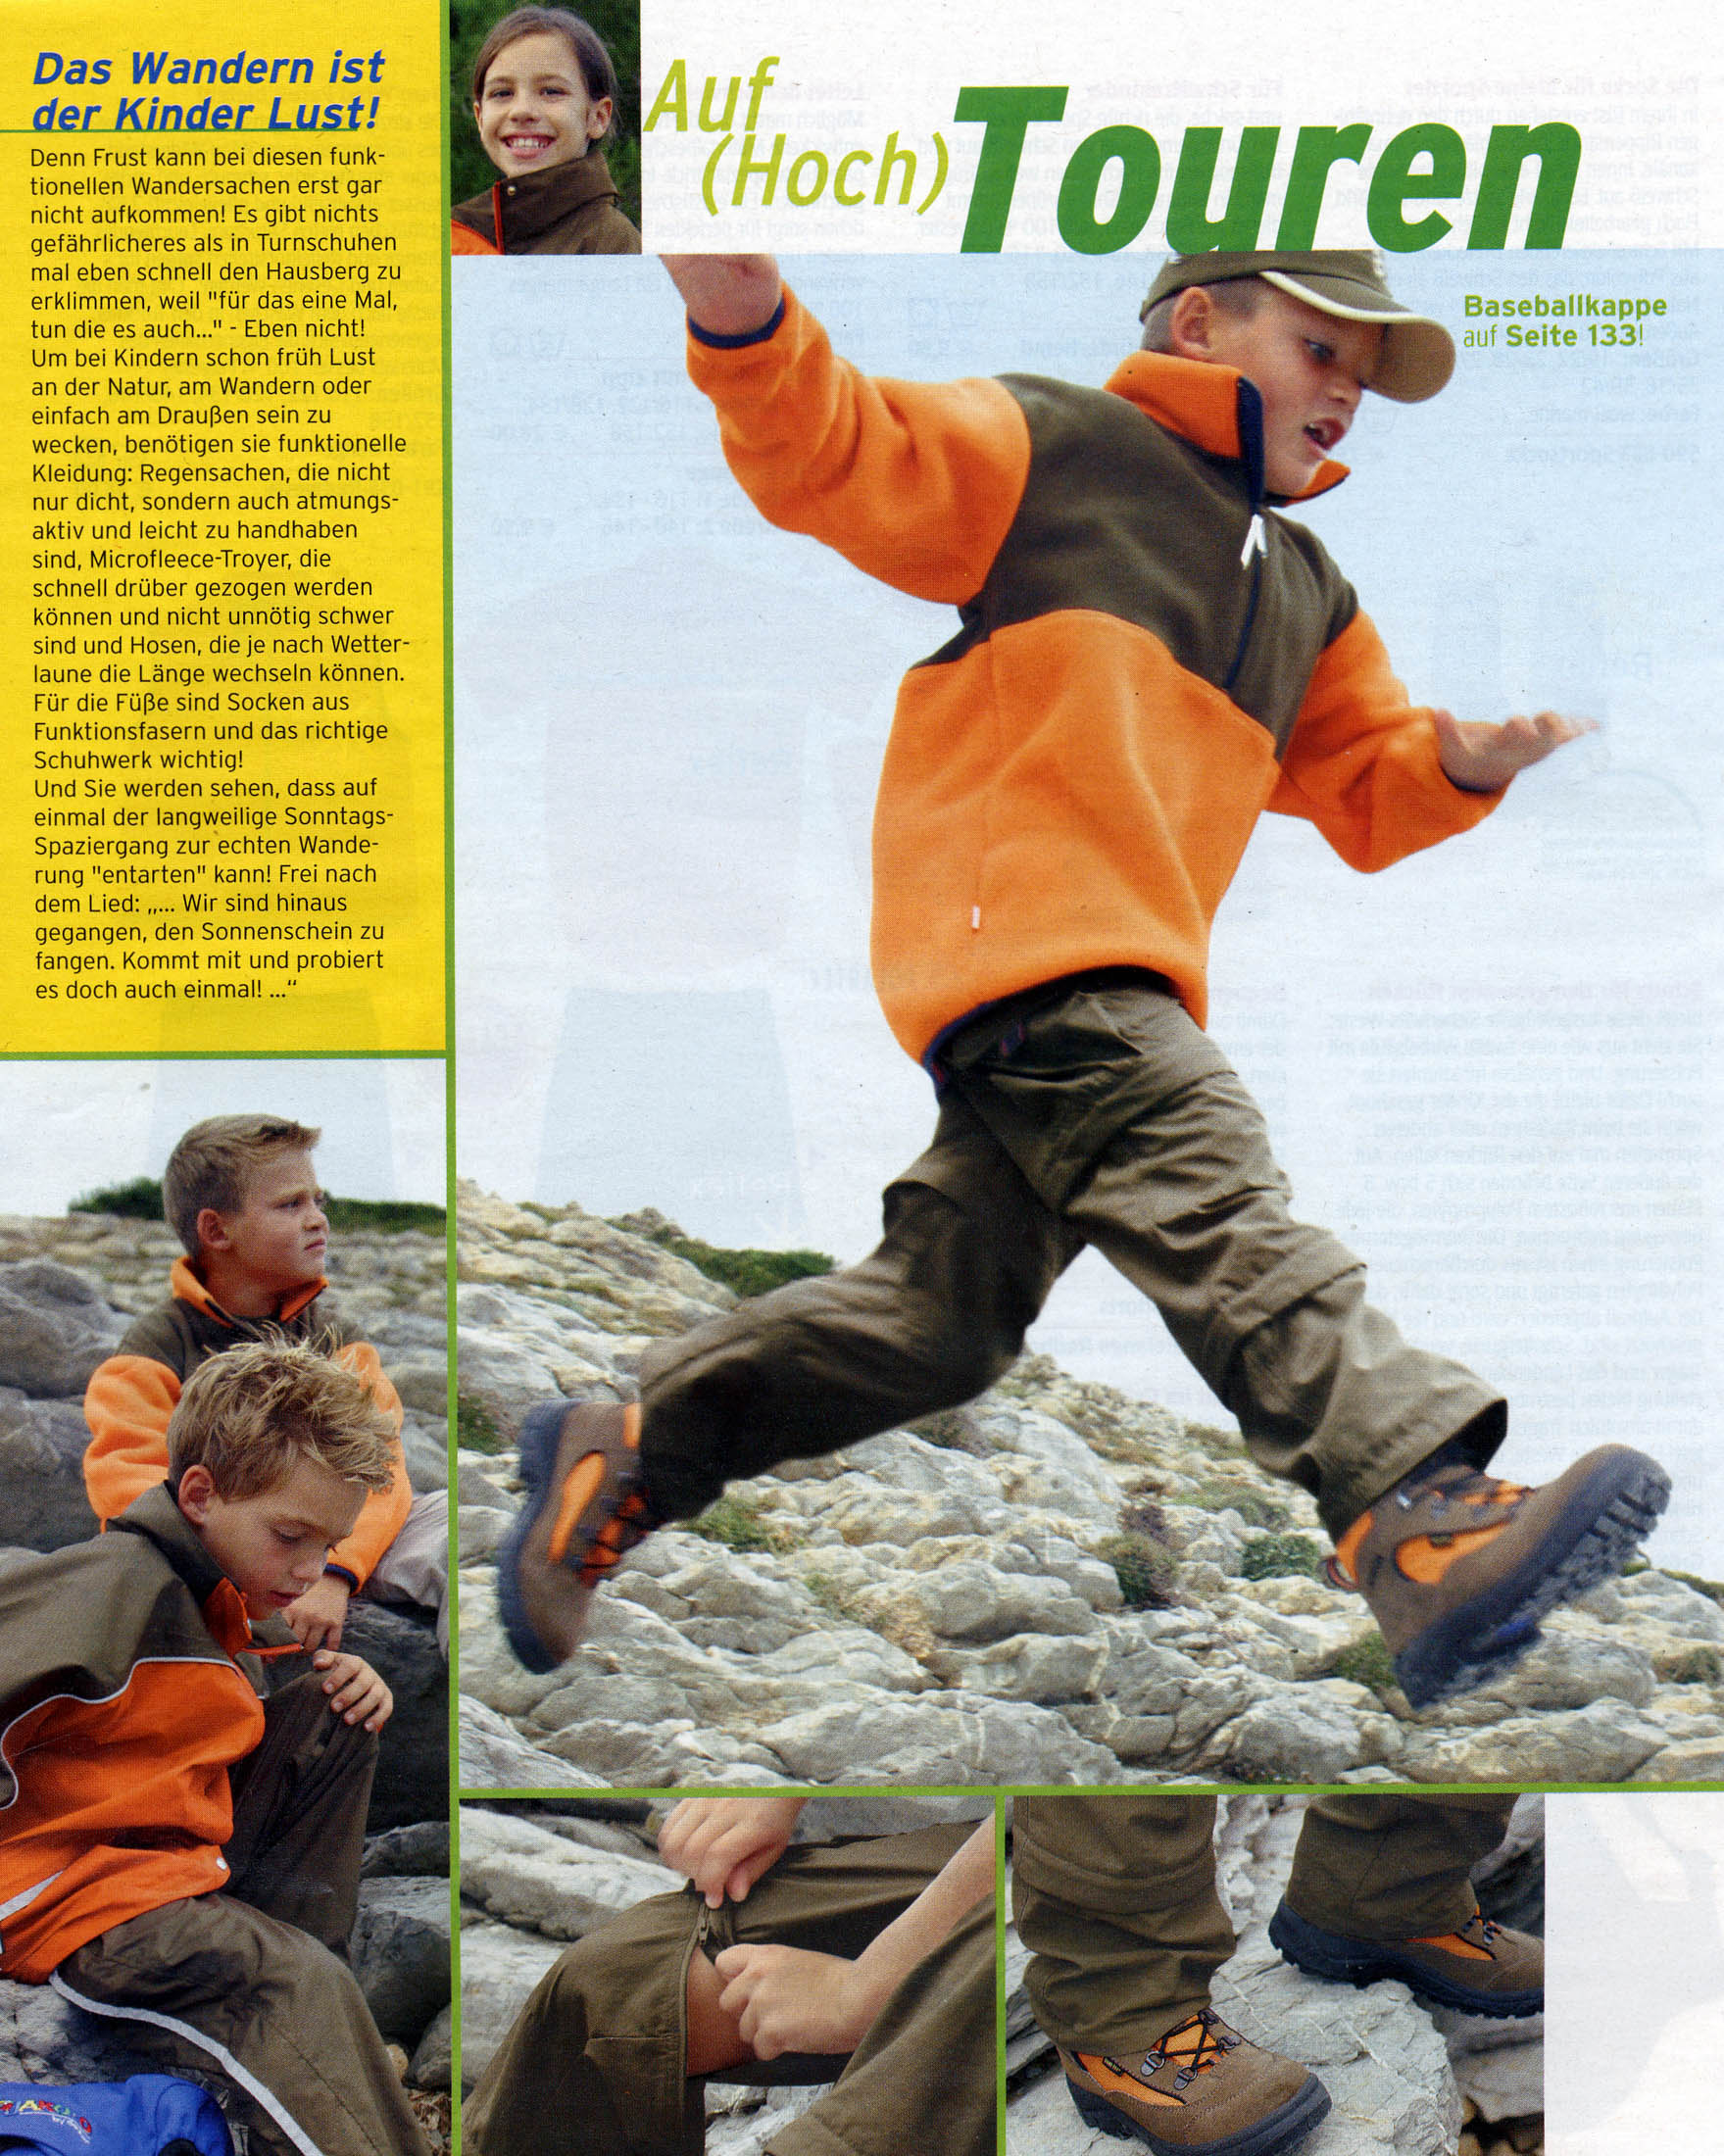 Ein kleiner Junge mit Baseballkappe und orangefarbener Kleidung klettert vorsichtig über schroffe Felsen, während zwei andere Jungen ebenfalls durch das felsige Gelände klettern. Sie wirken bei ihrem Outdoor-Abenteuer engagiert und aktiv. © Fotografie Tomas Rodriguez